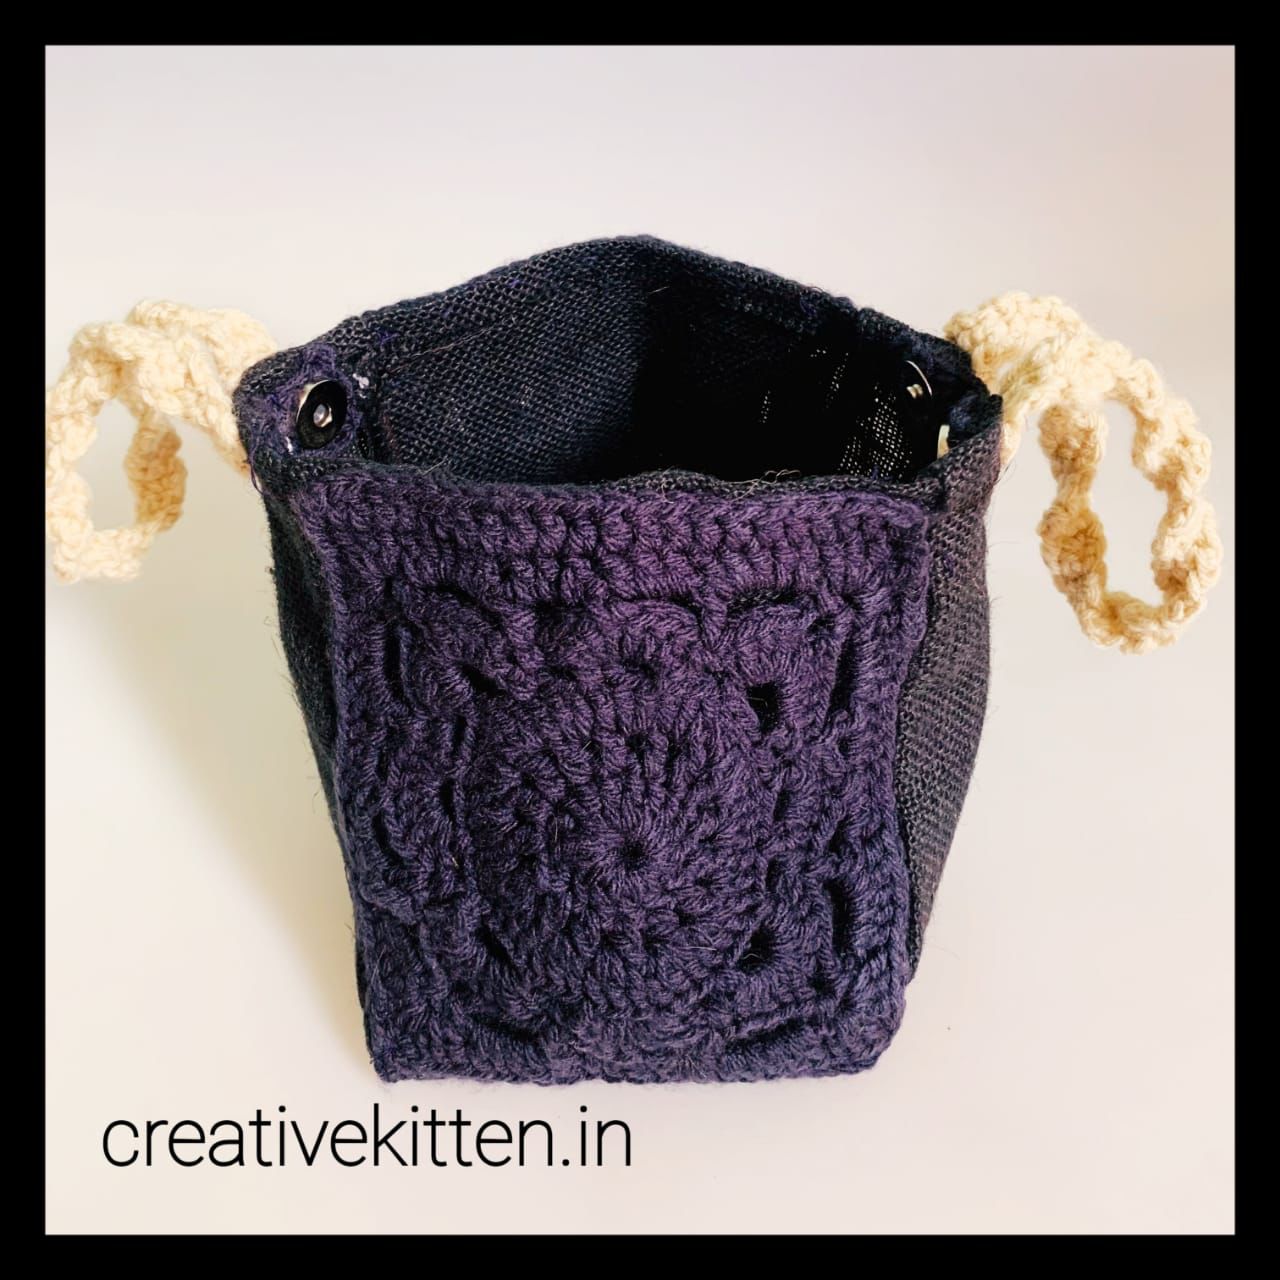 Crochet Boho Festival Bag by Selina Veronique Crochet